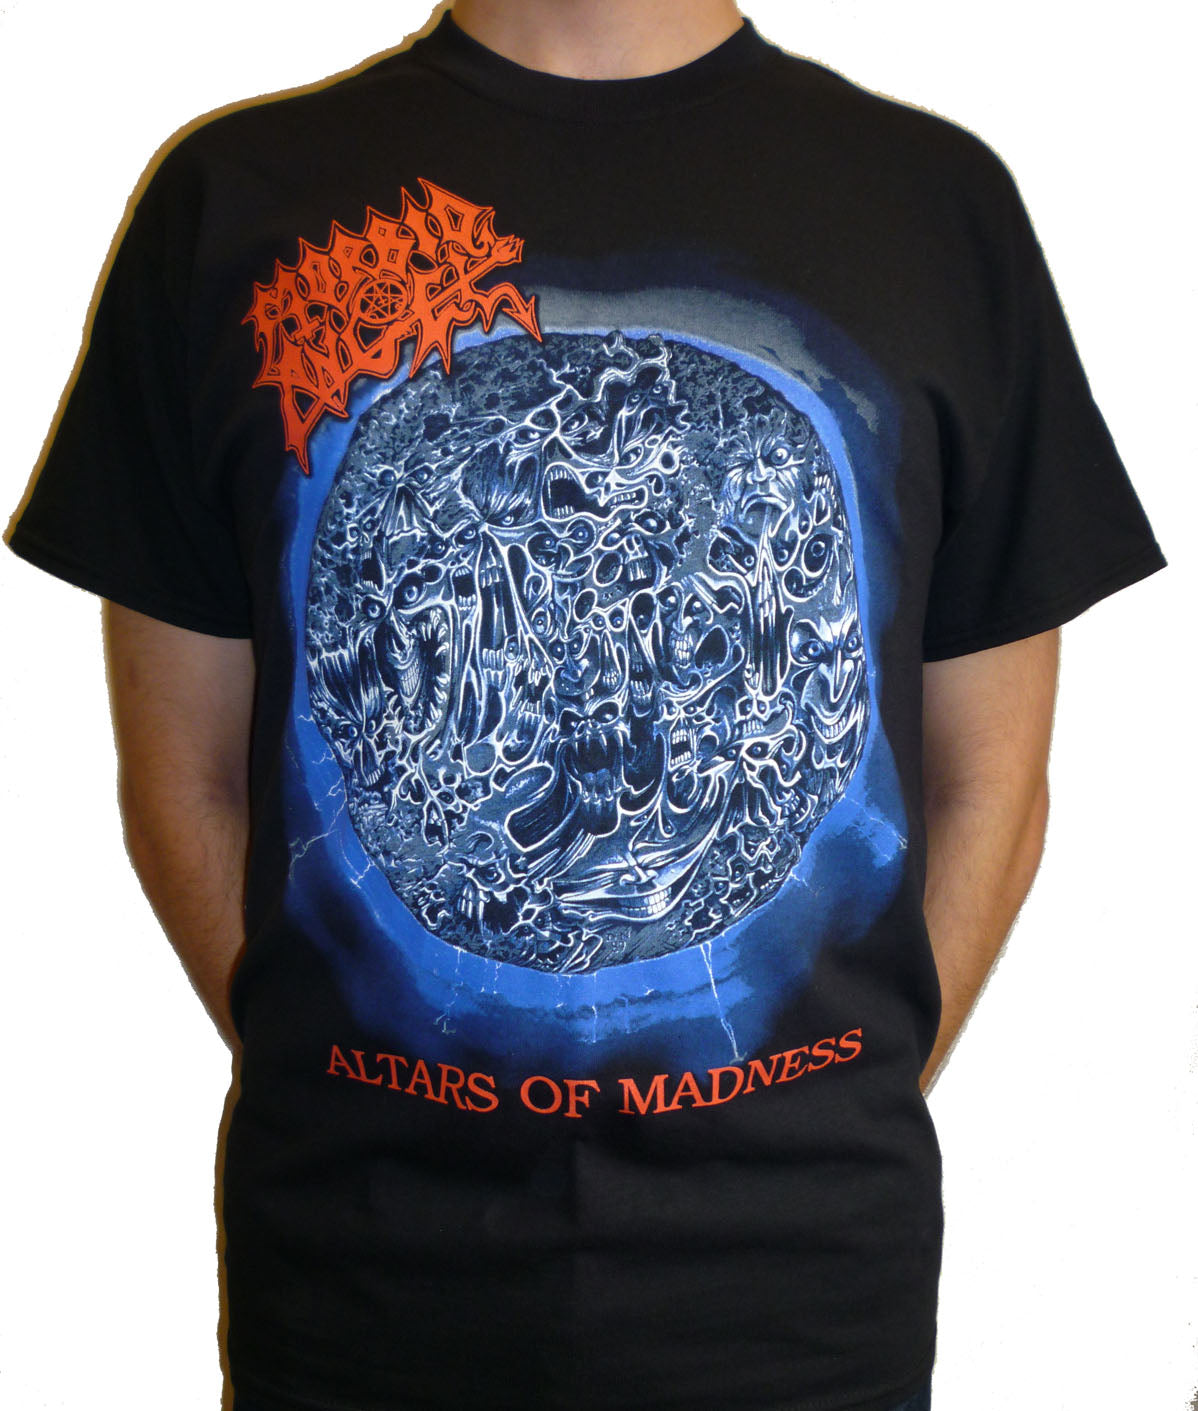 Morbid Angel "Altars Of Madness" Album Cover T-shirt